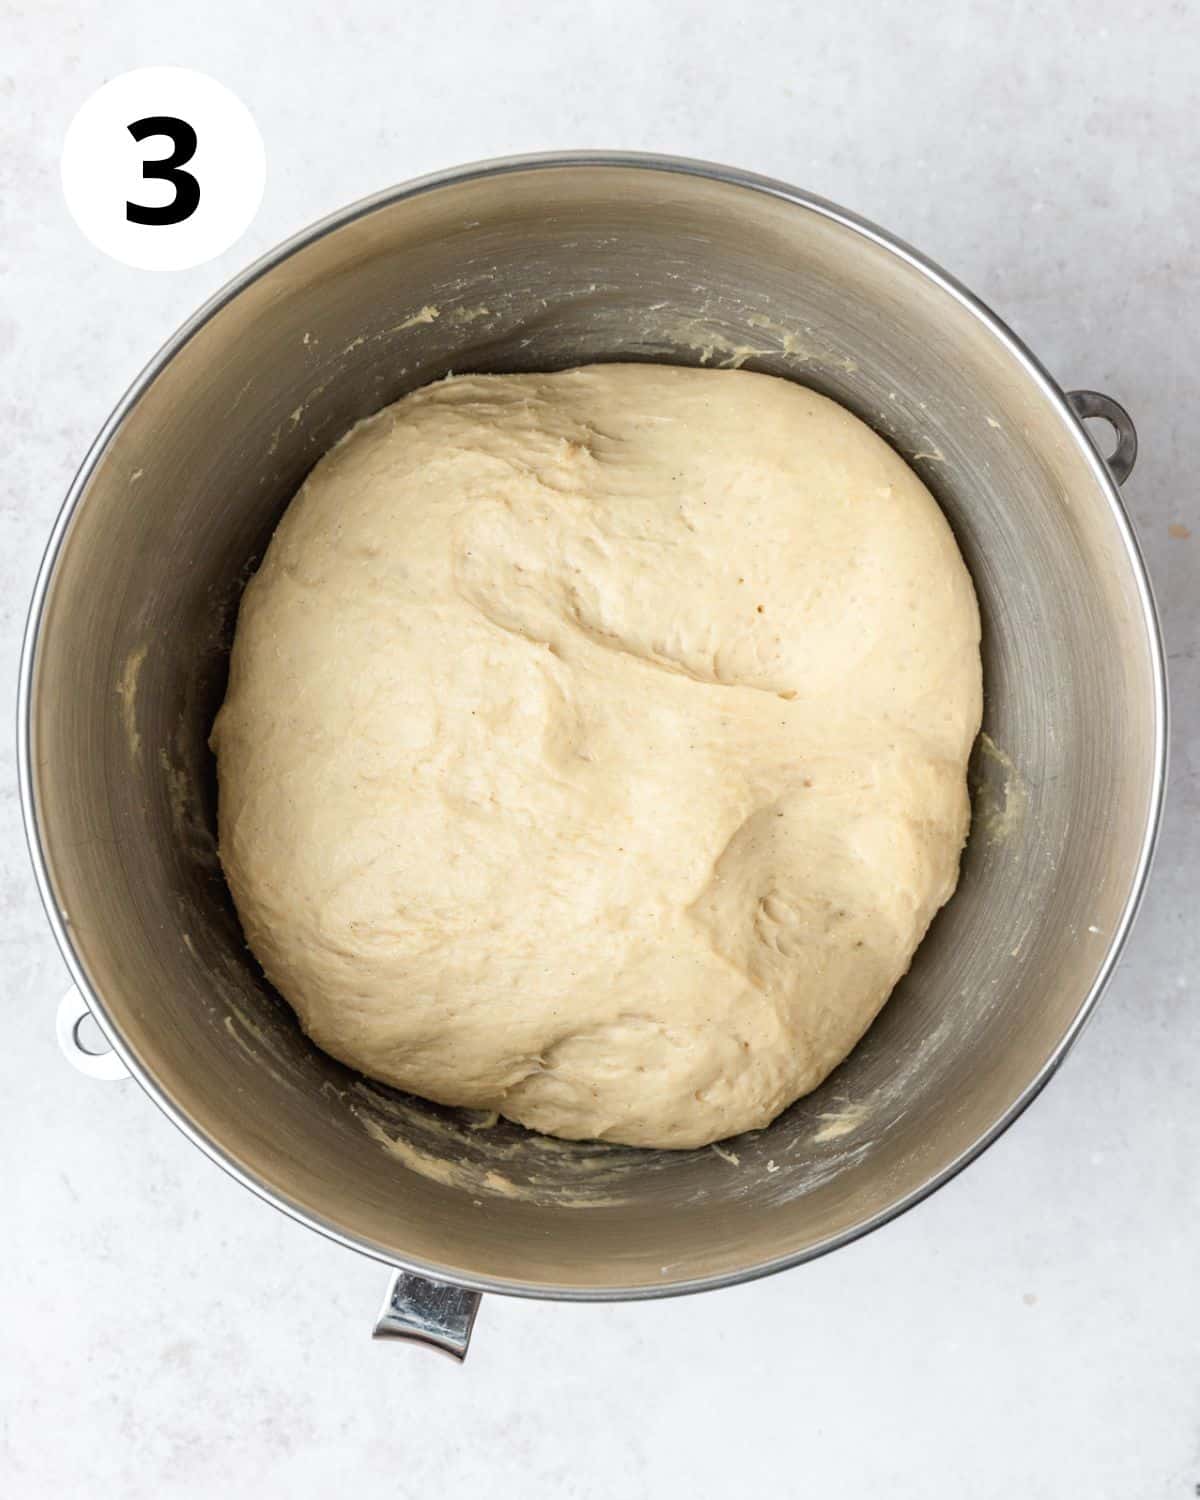 dough after rising.